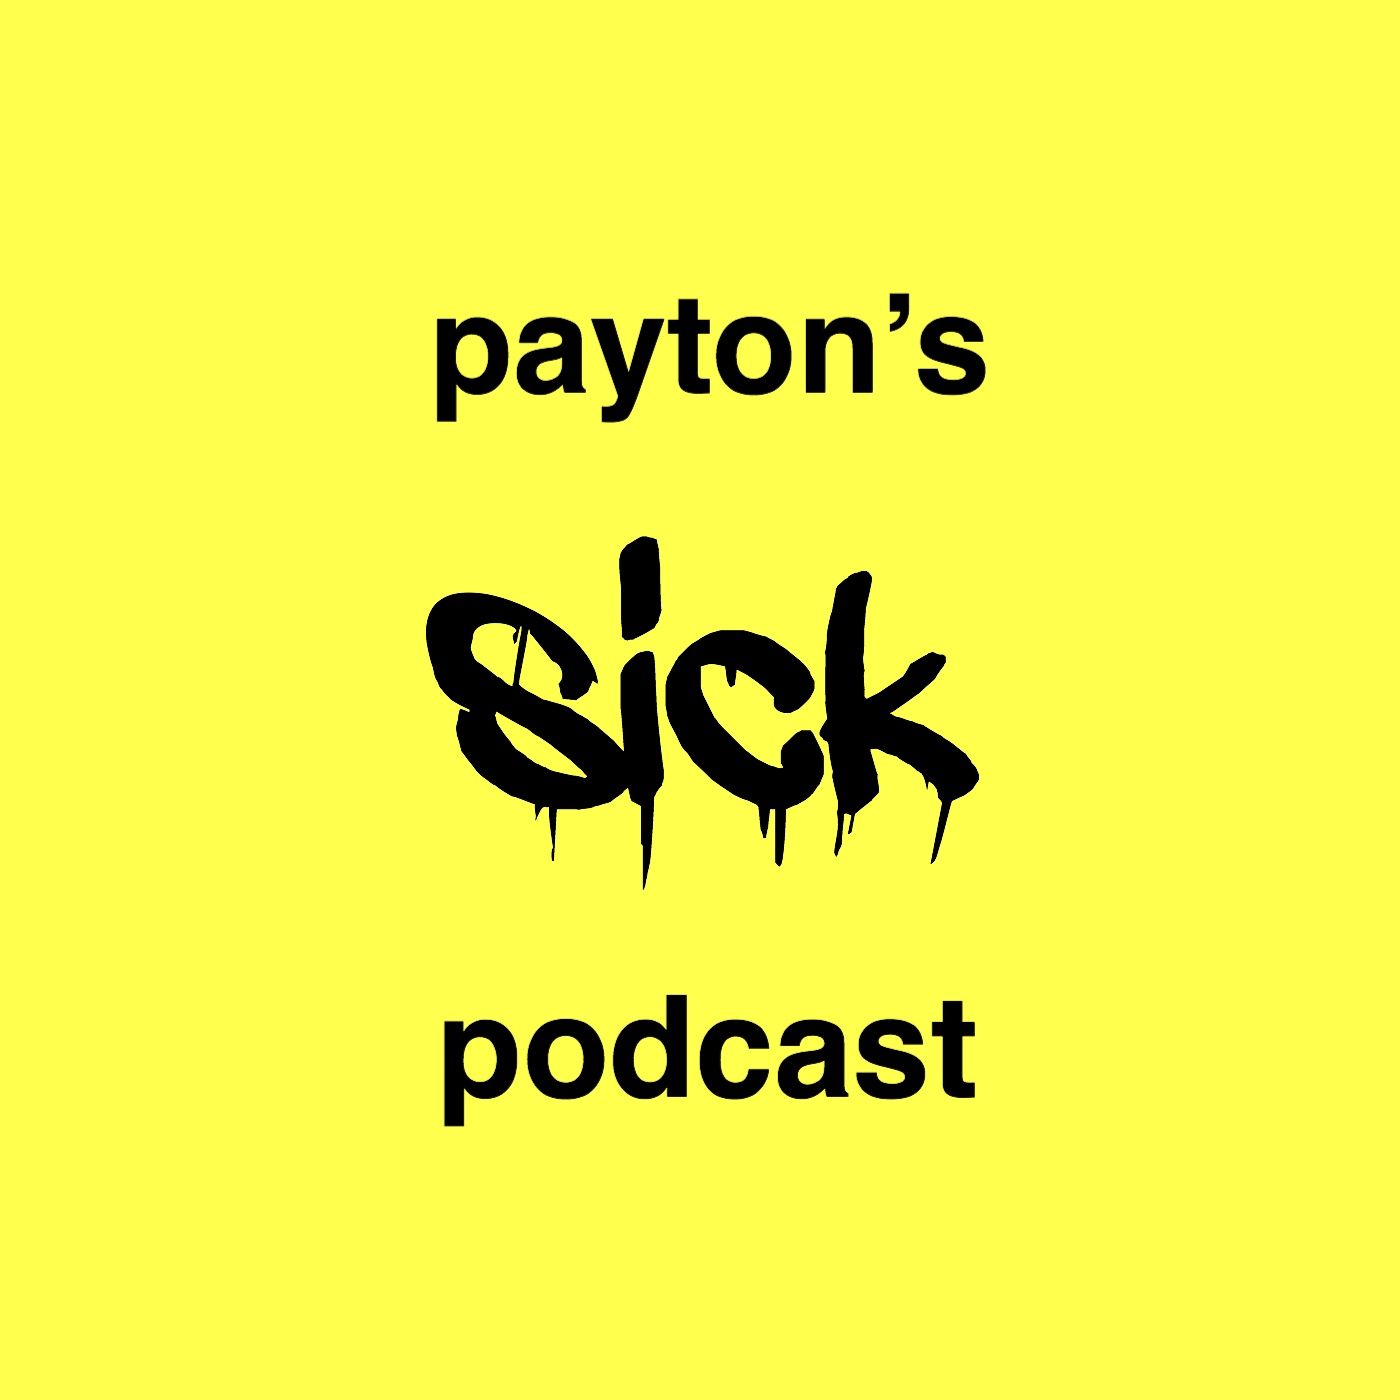 payton’s sick podcast